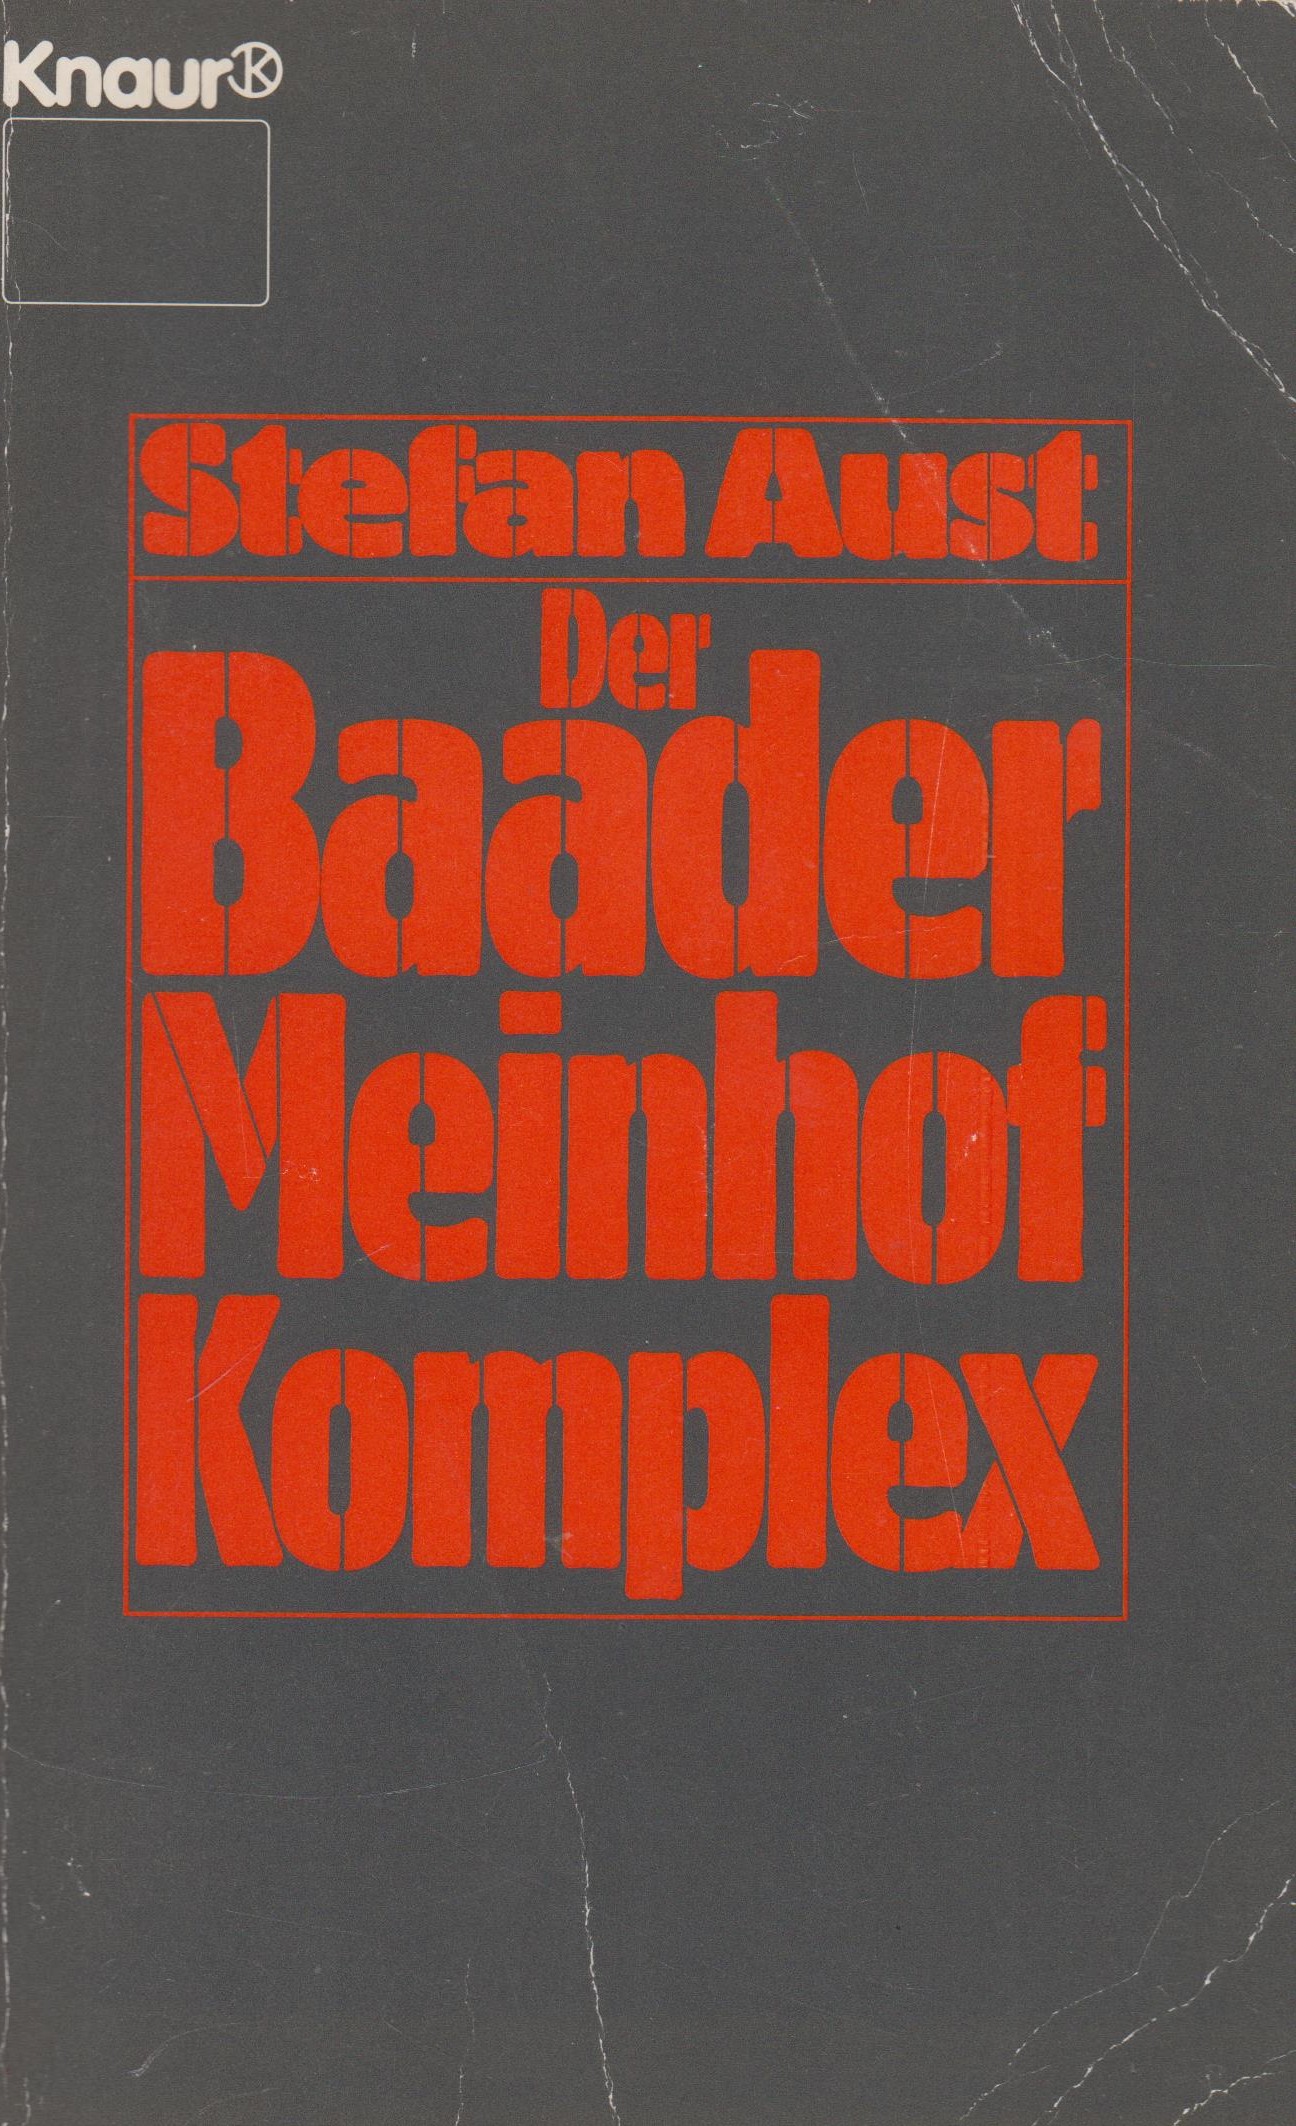 Der Baader-Meinhof-Komplex - Aust, Stefan